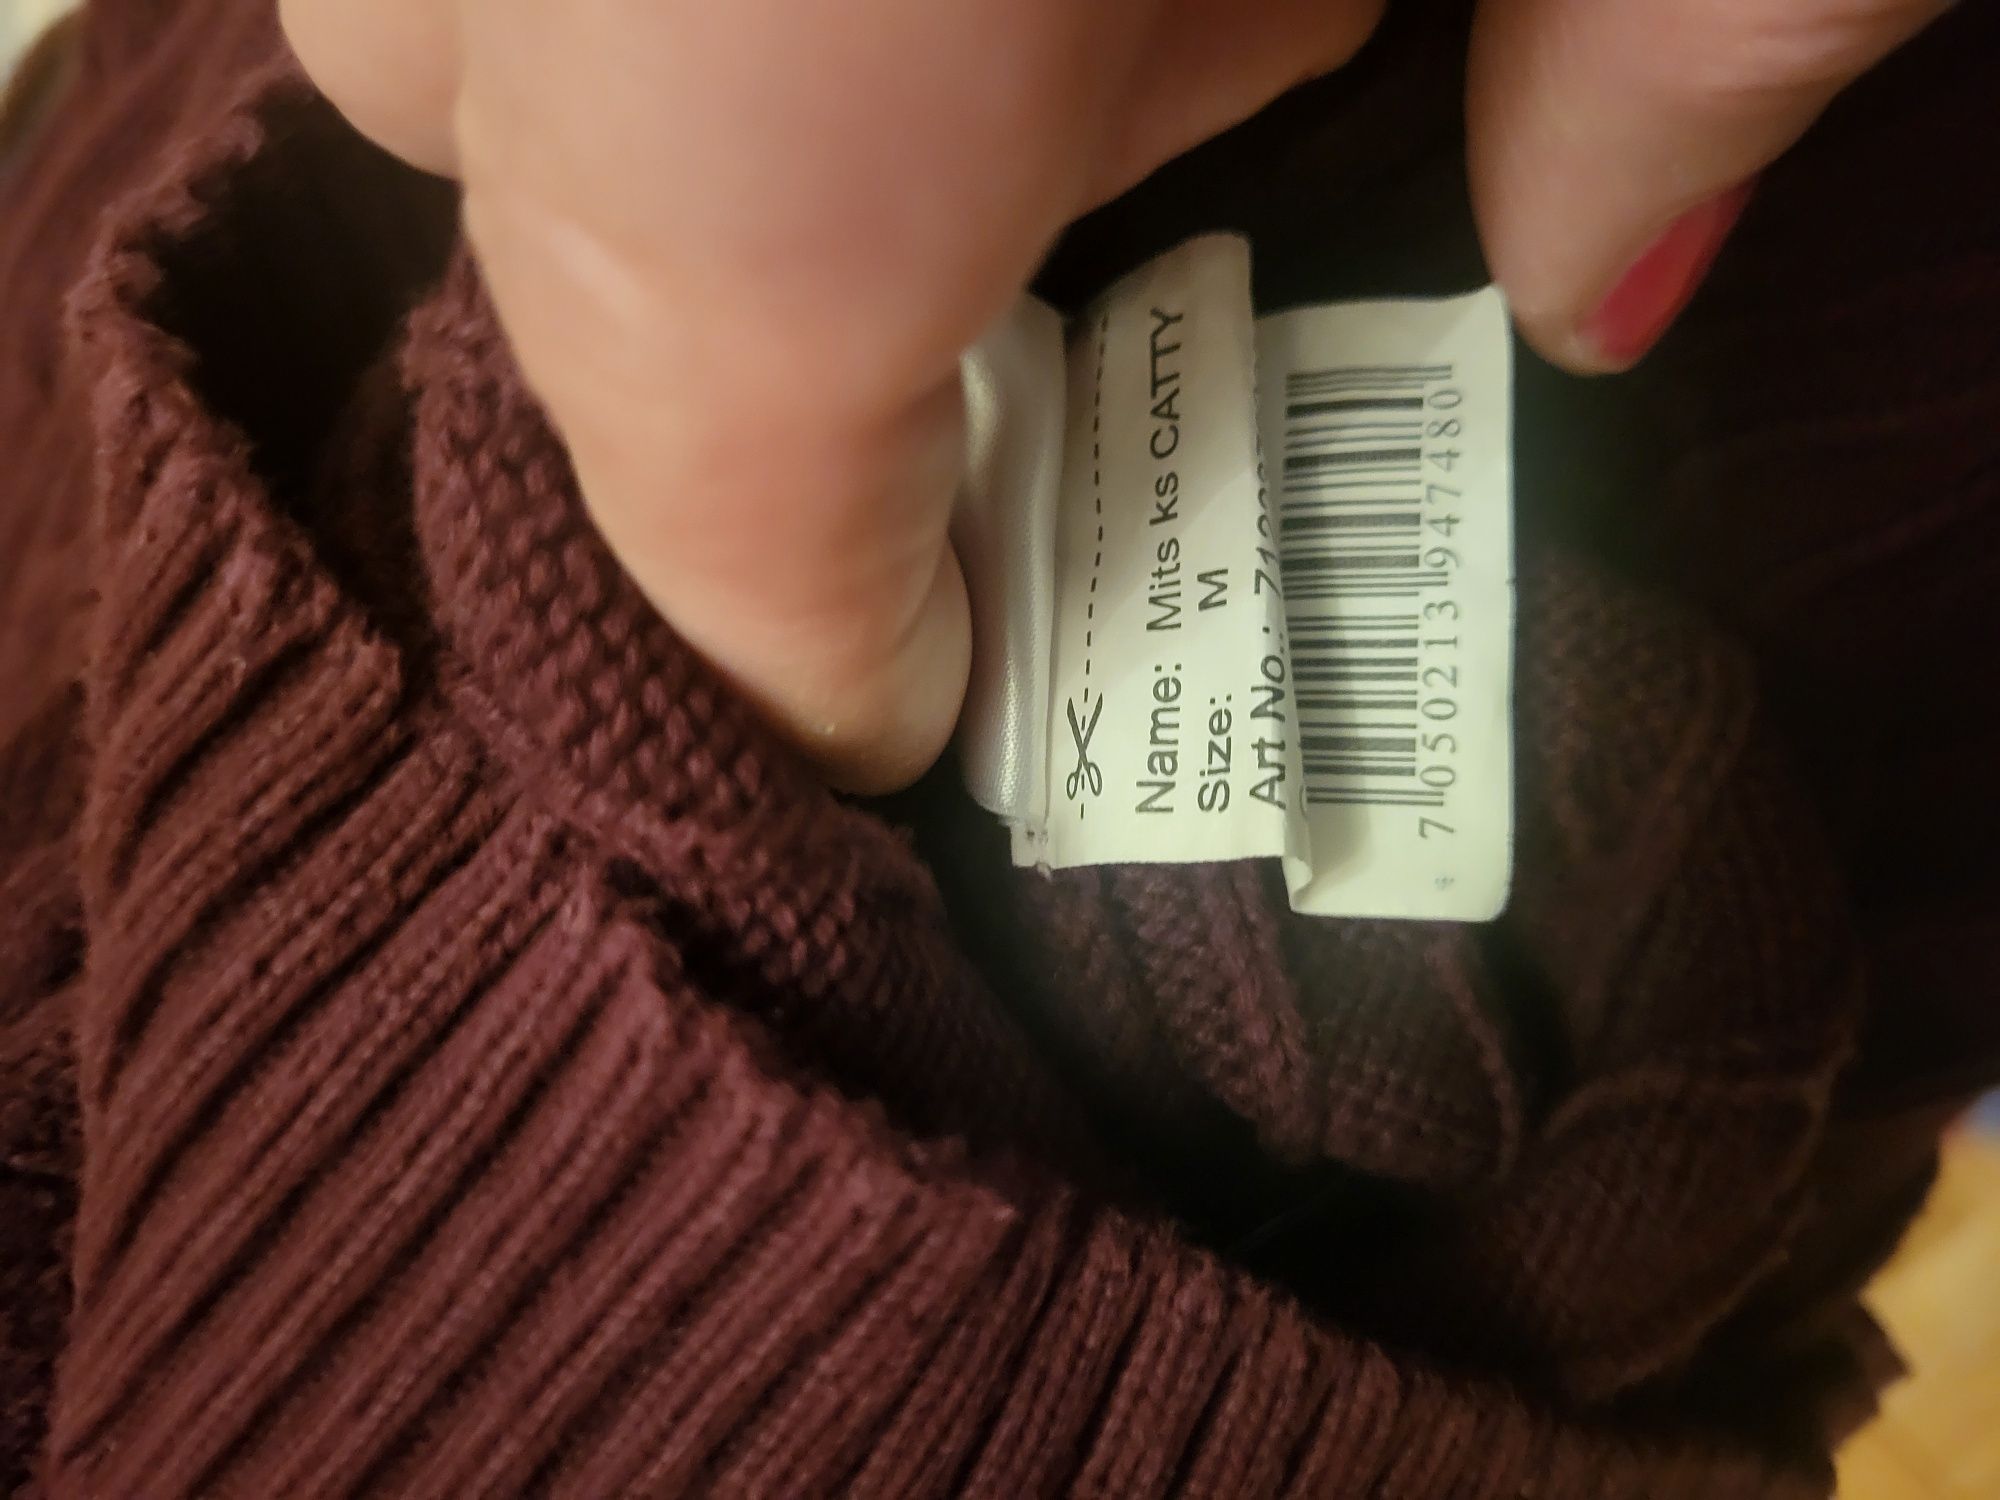 Sweterek bawelna rozmiar M cena 17zlotych